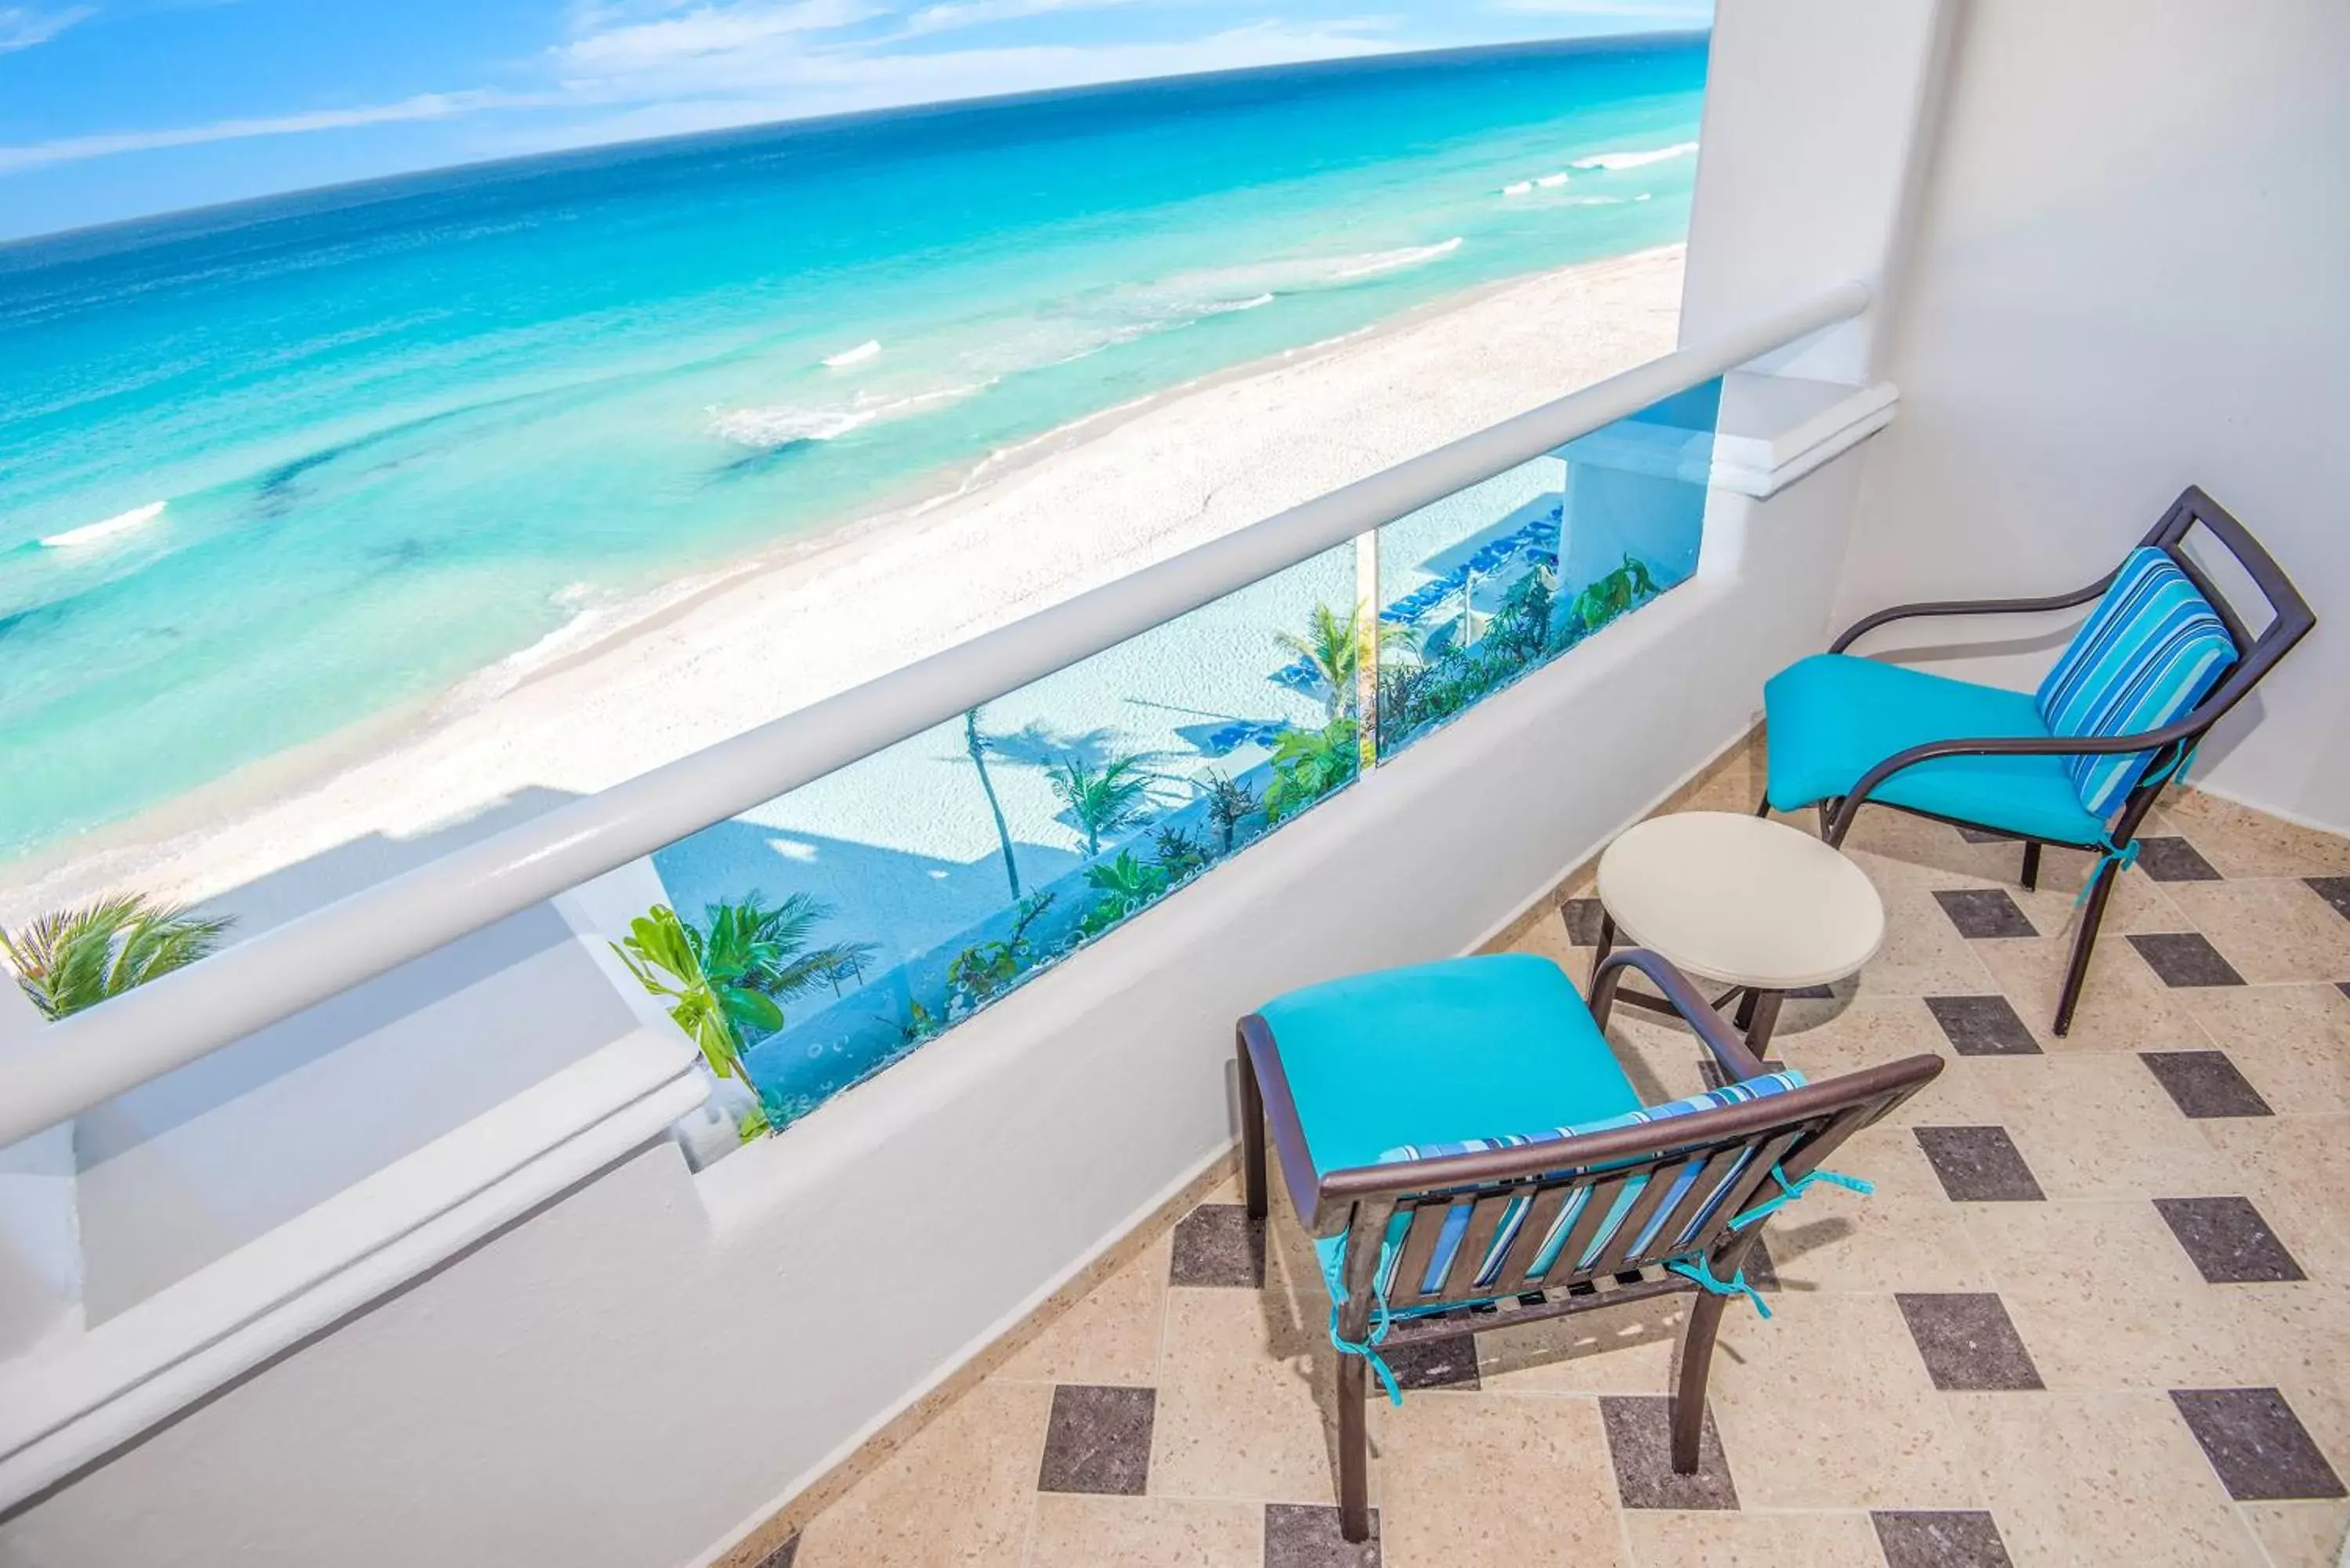 Sea view in Wyndham Alltra Cancun All Inclusive Resort